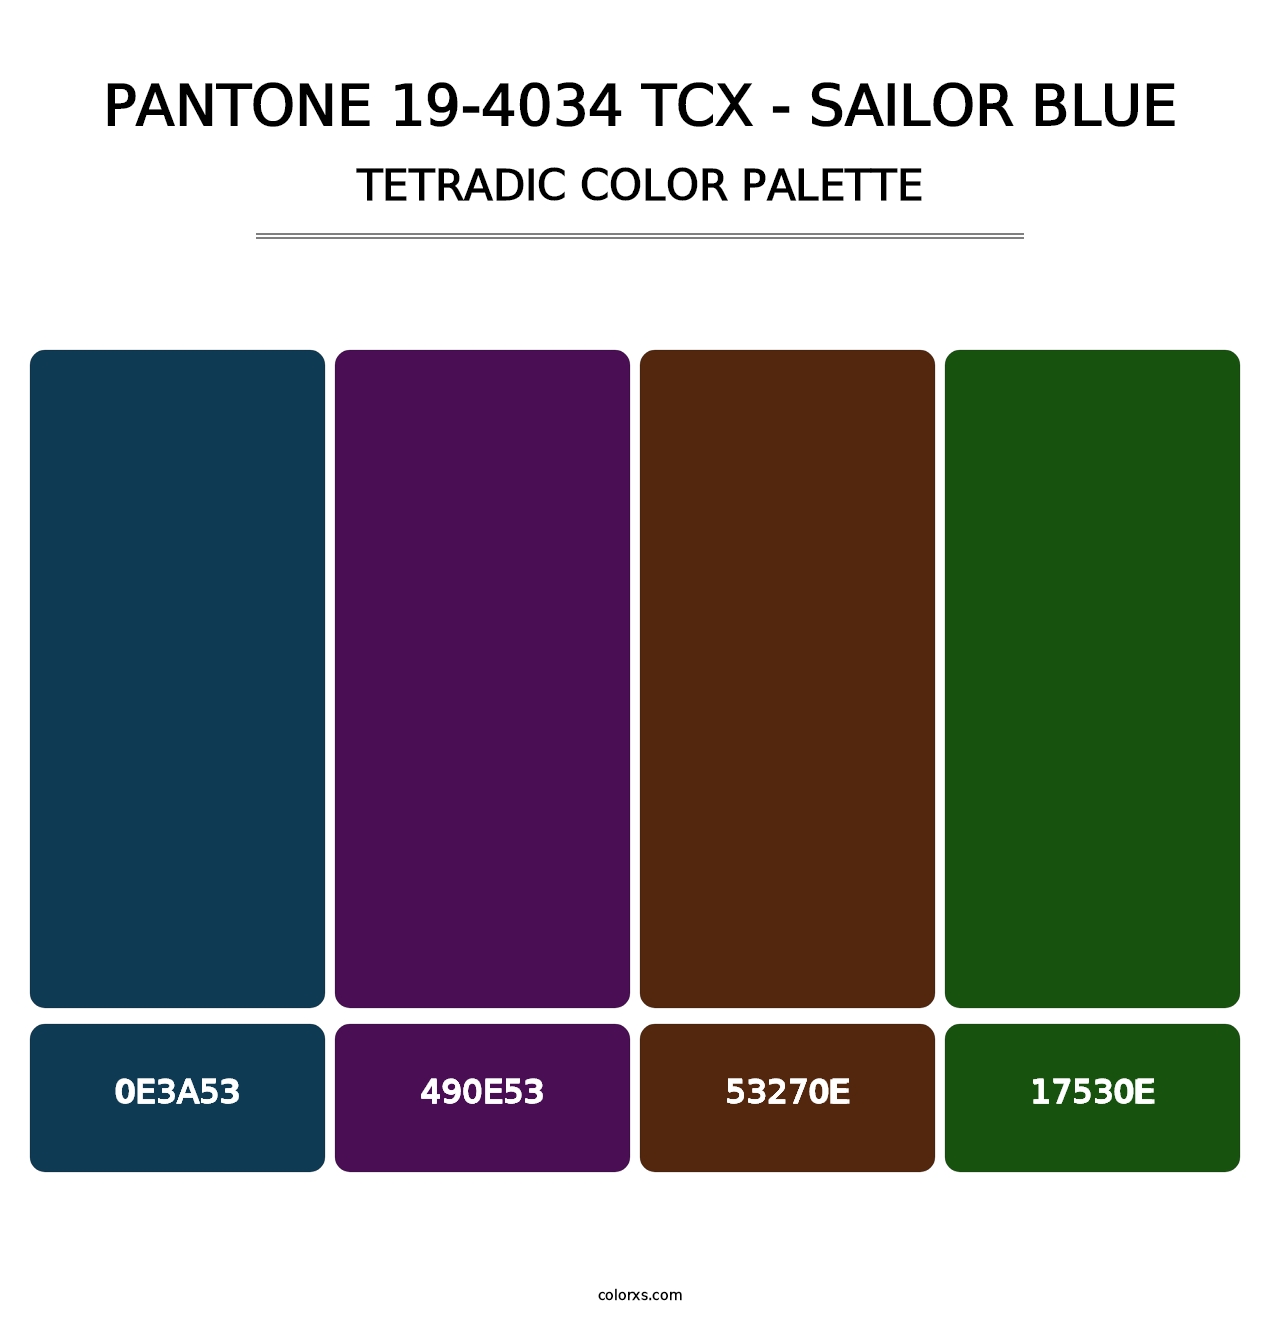 PANTONE 19-4034 TCX - Sailor Blue - Tetradic Color Palette